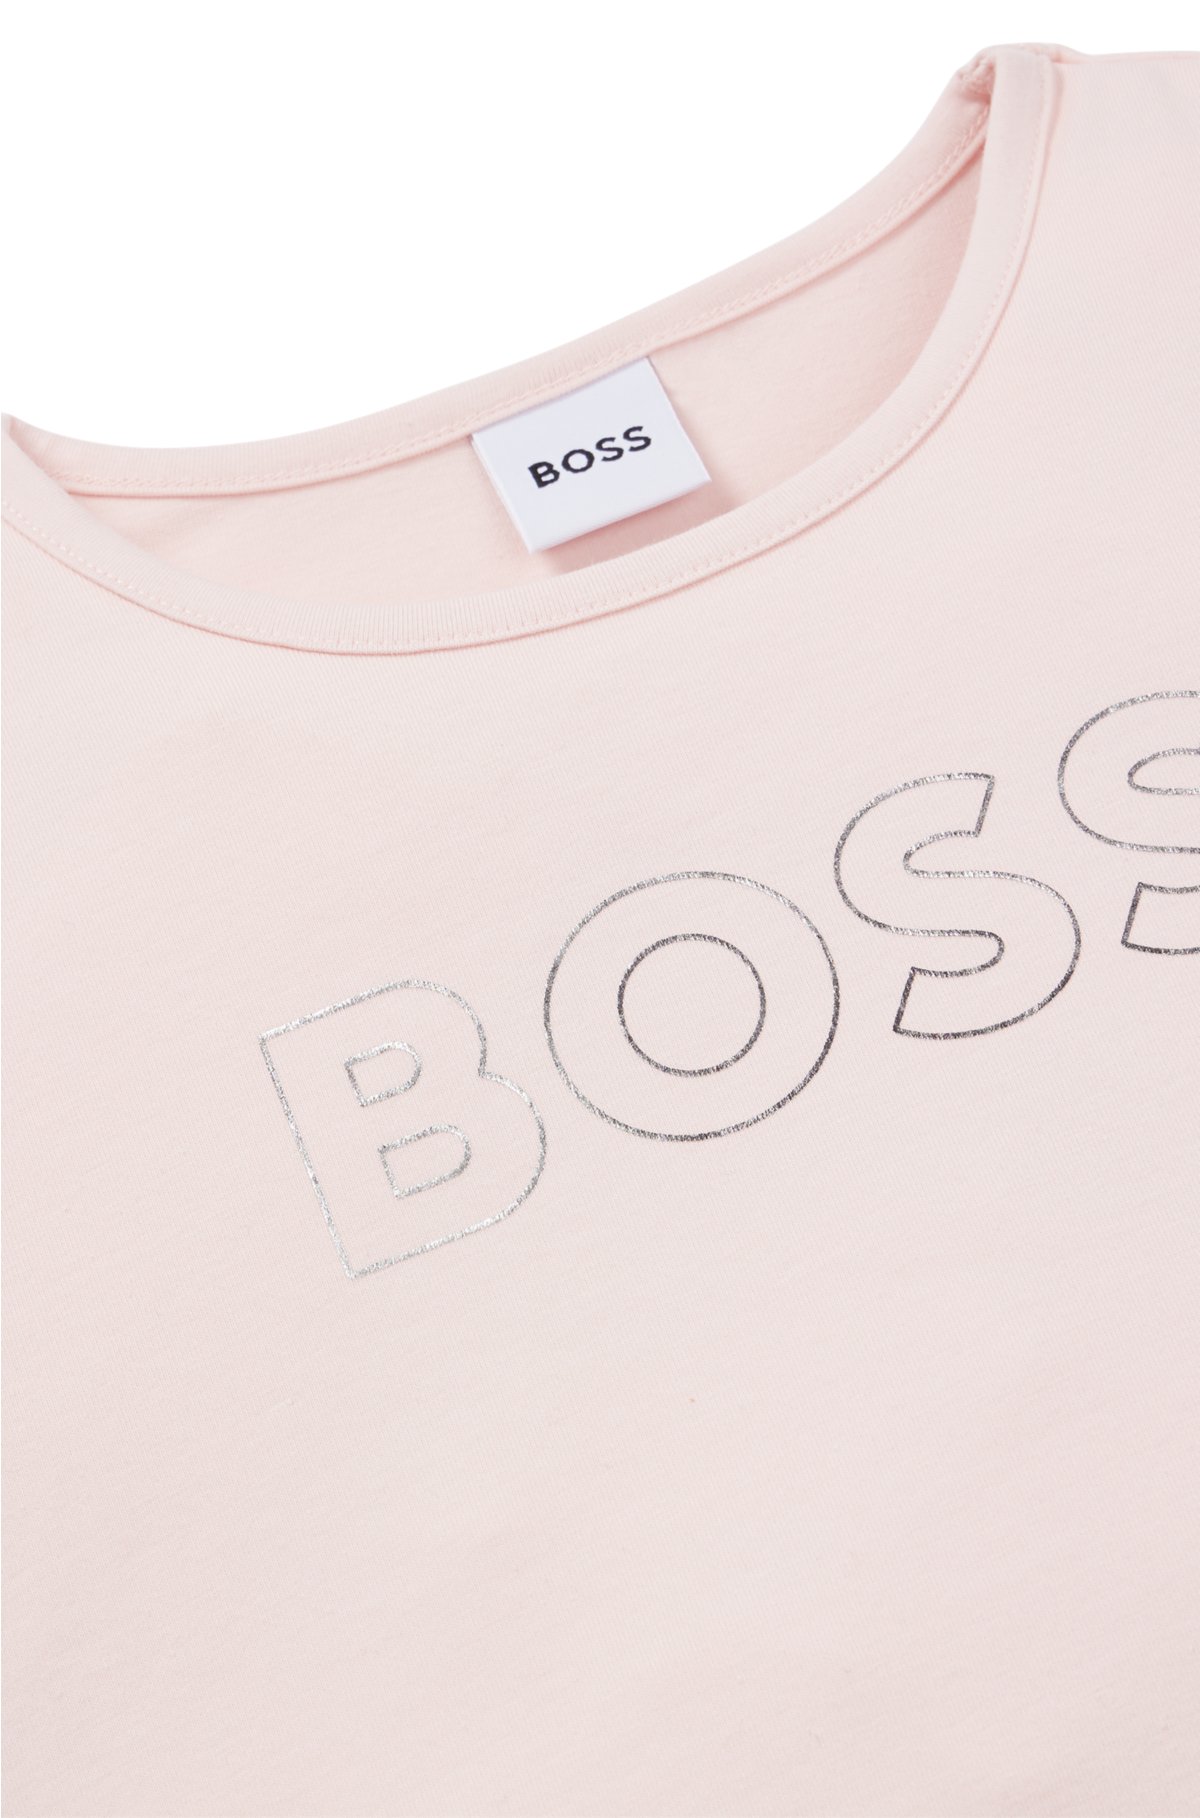 BOSS ヒューゴボス オーバーサイズ コットン ストレッチ Tシャツ